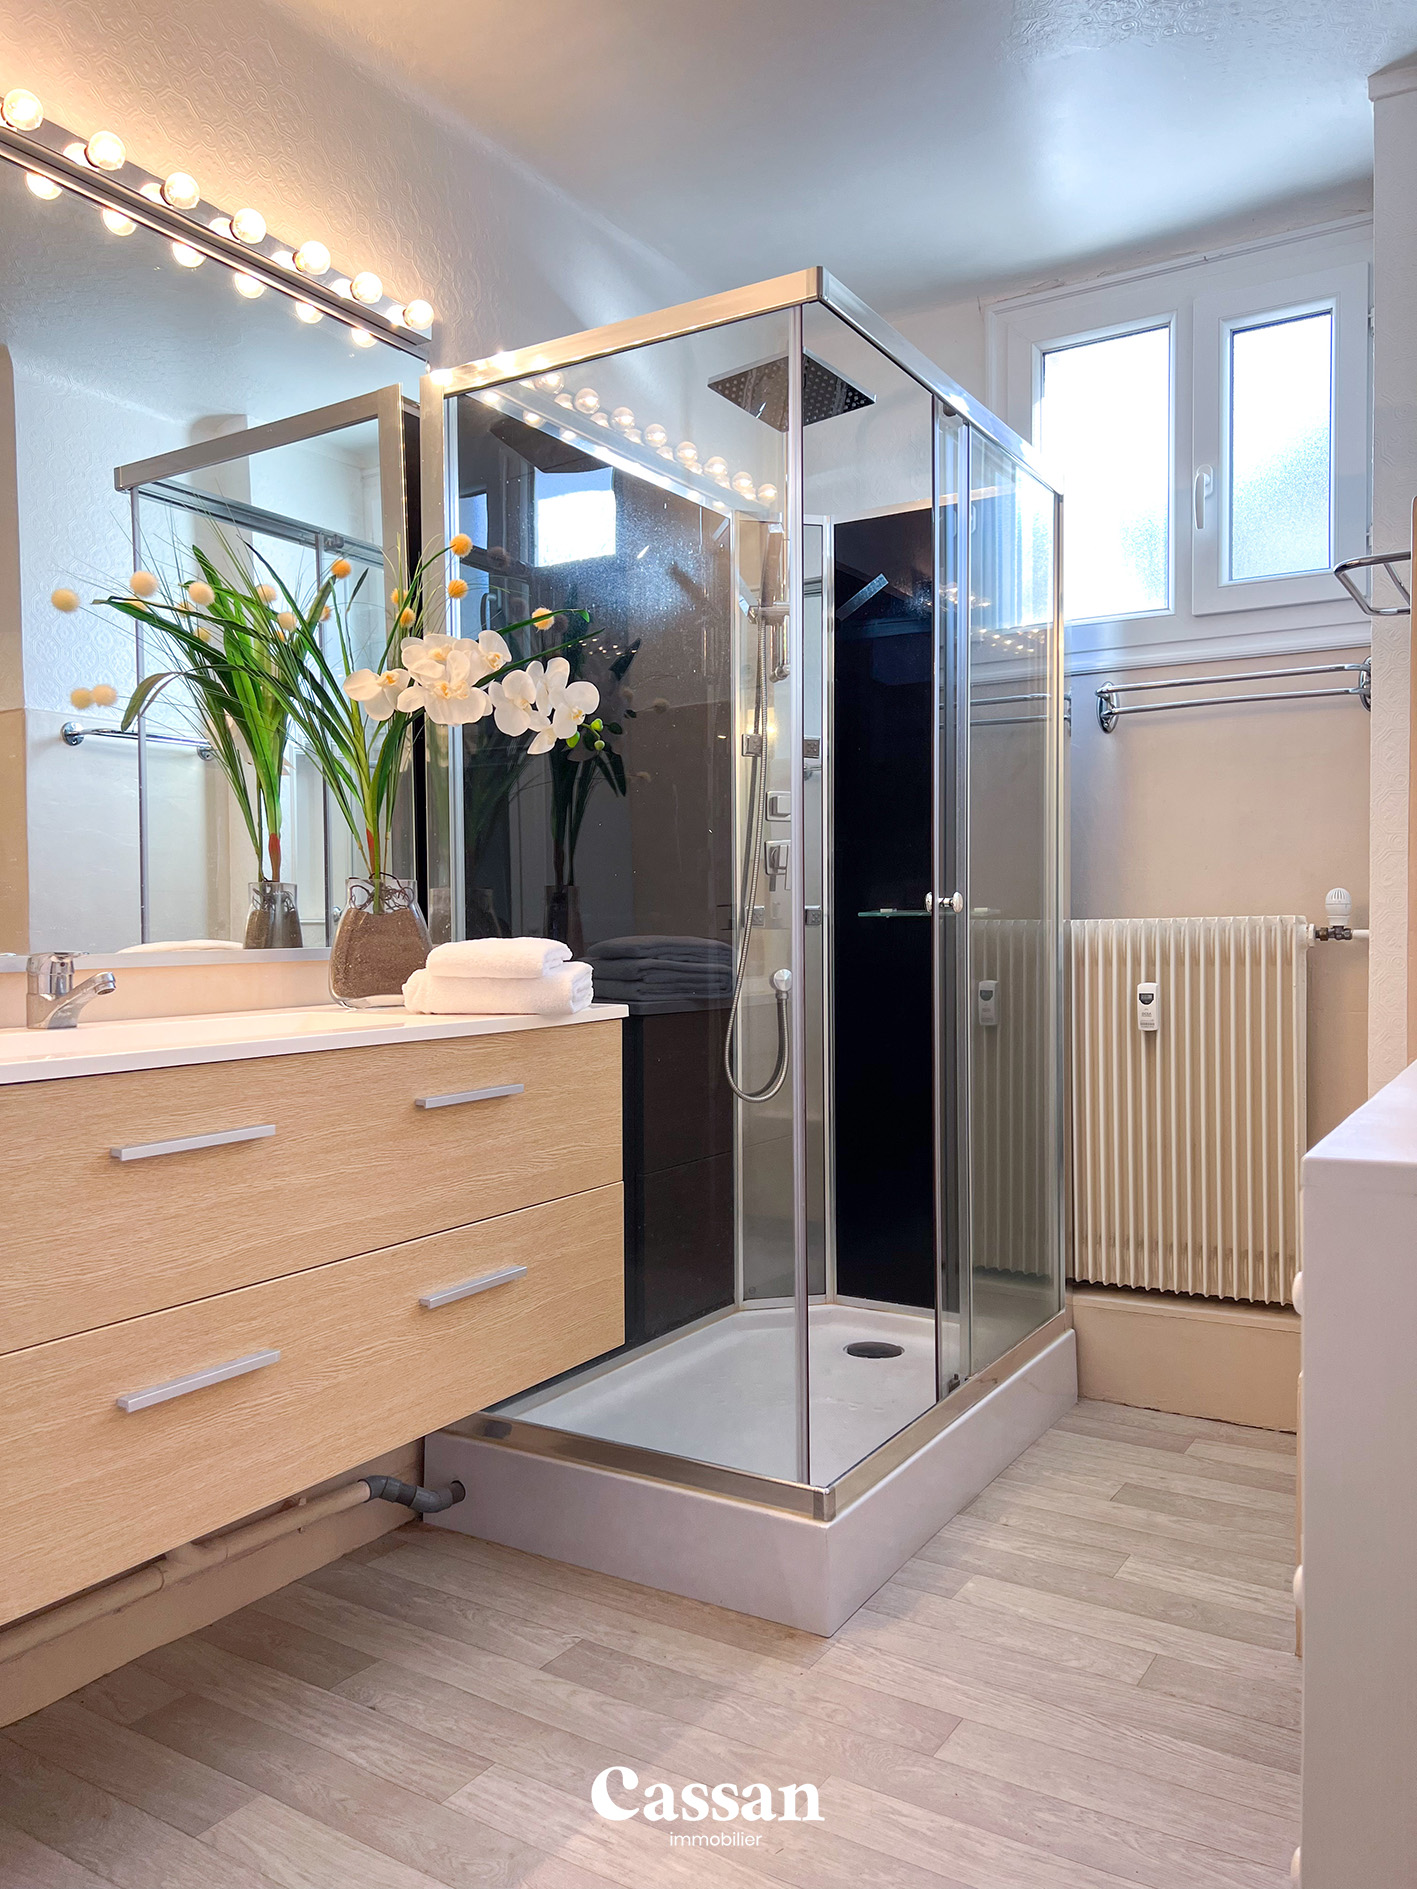 Salle de bain appartement à vendre Aurillac Cassan immobilier agence immobilière